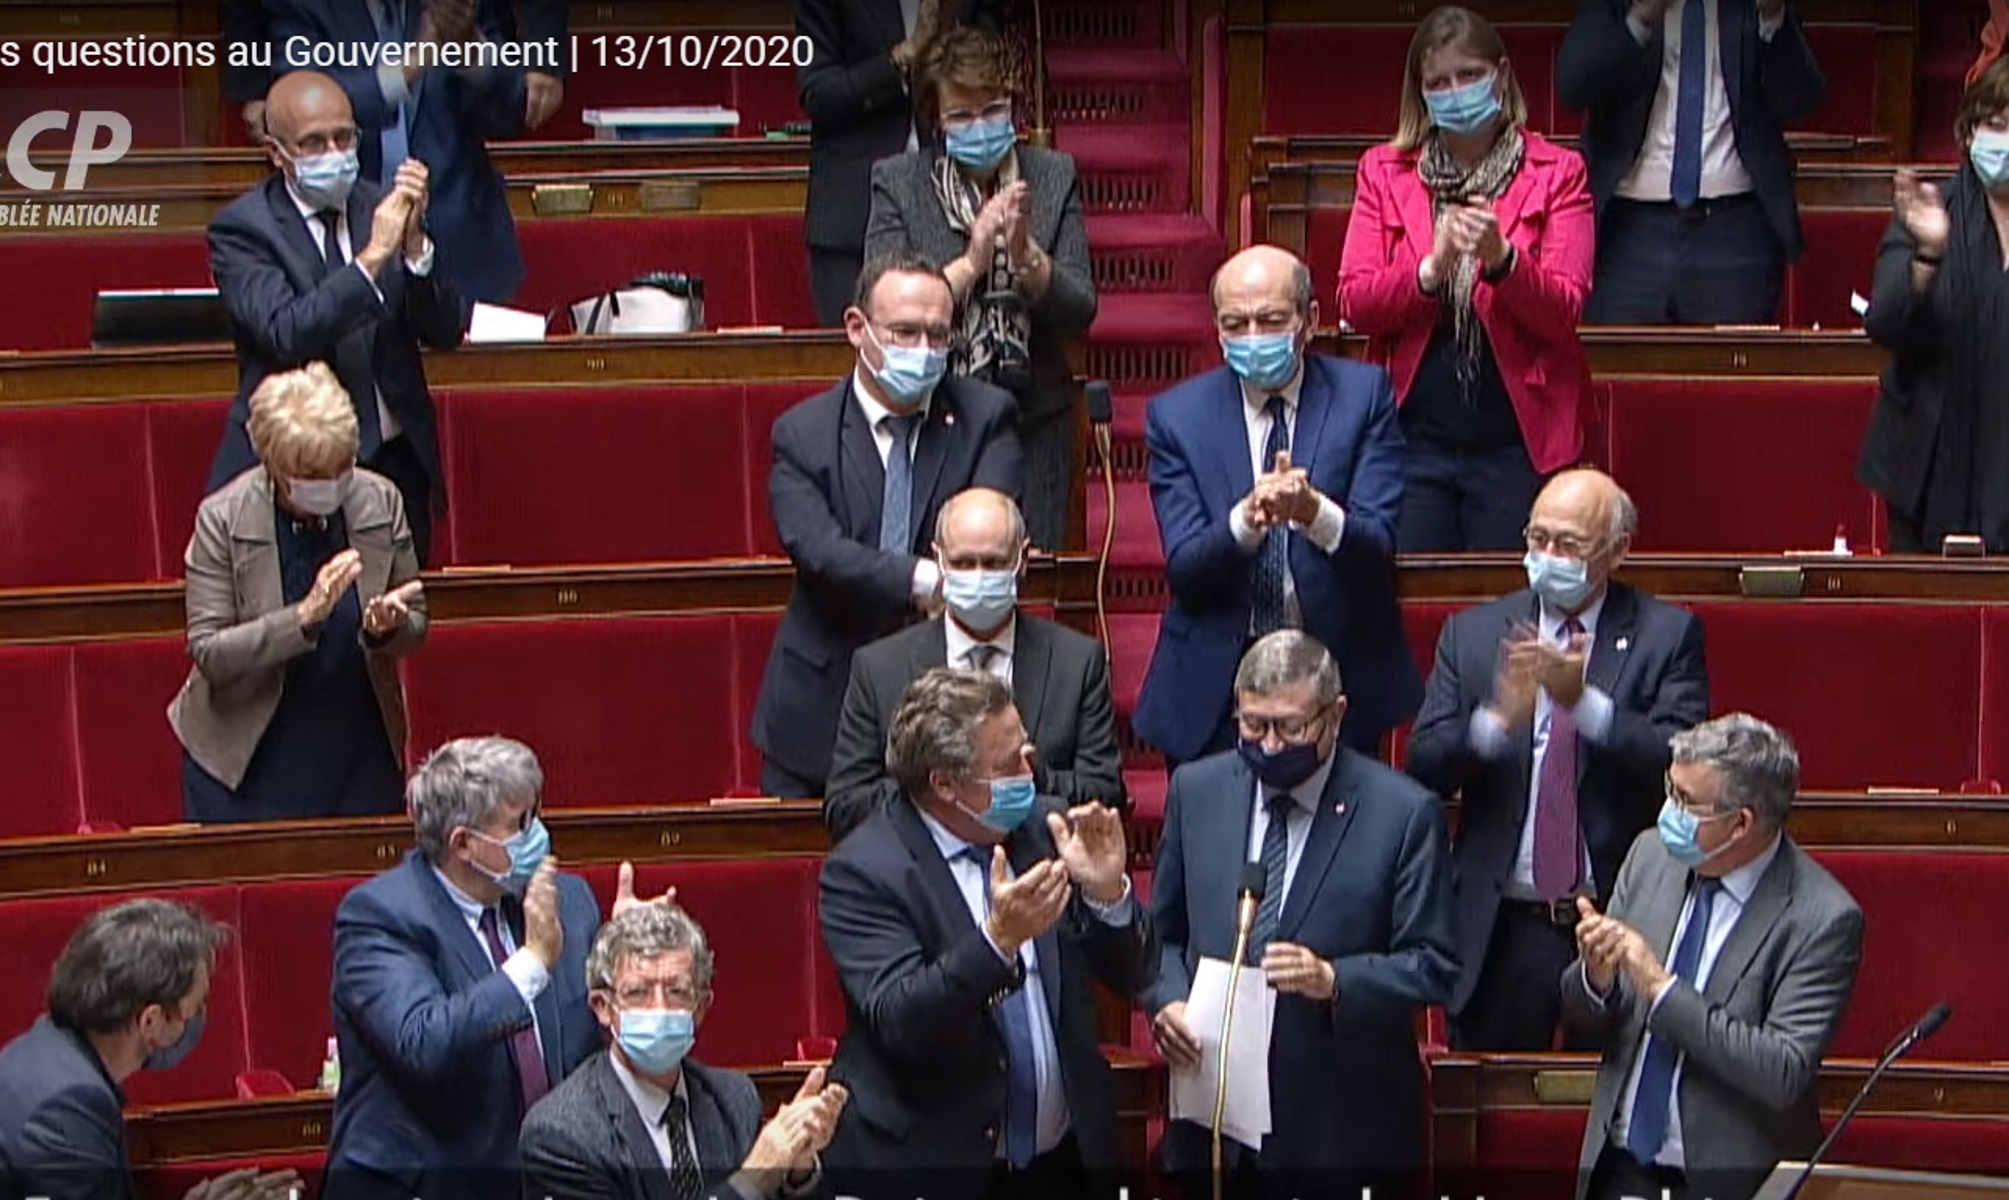 Γαλλία: Θερμή υποδοχή στον βουλευτή που επέστρεψε στα έδρανα μετά ένα μήνα σε κώμα λόγω κορονοϊού